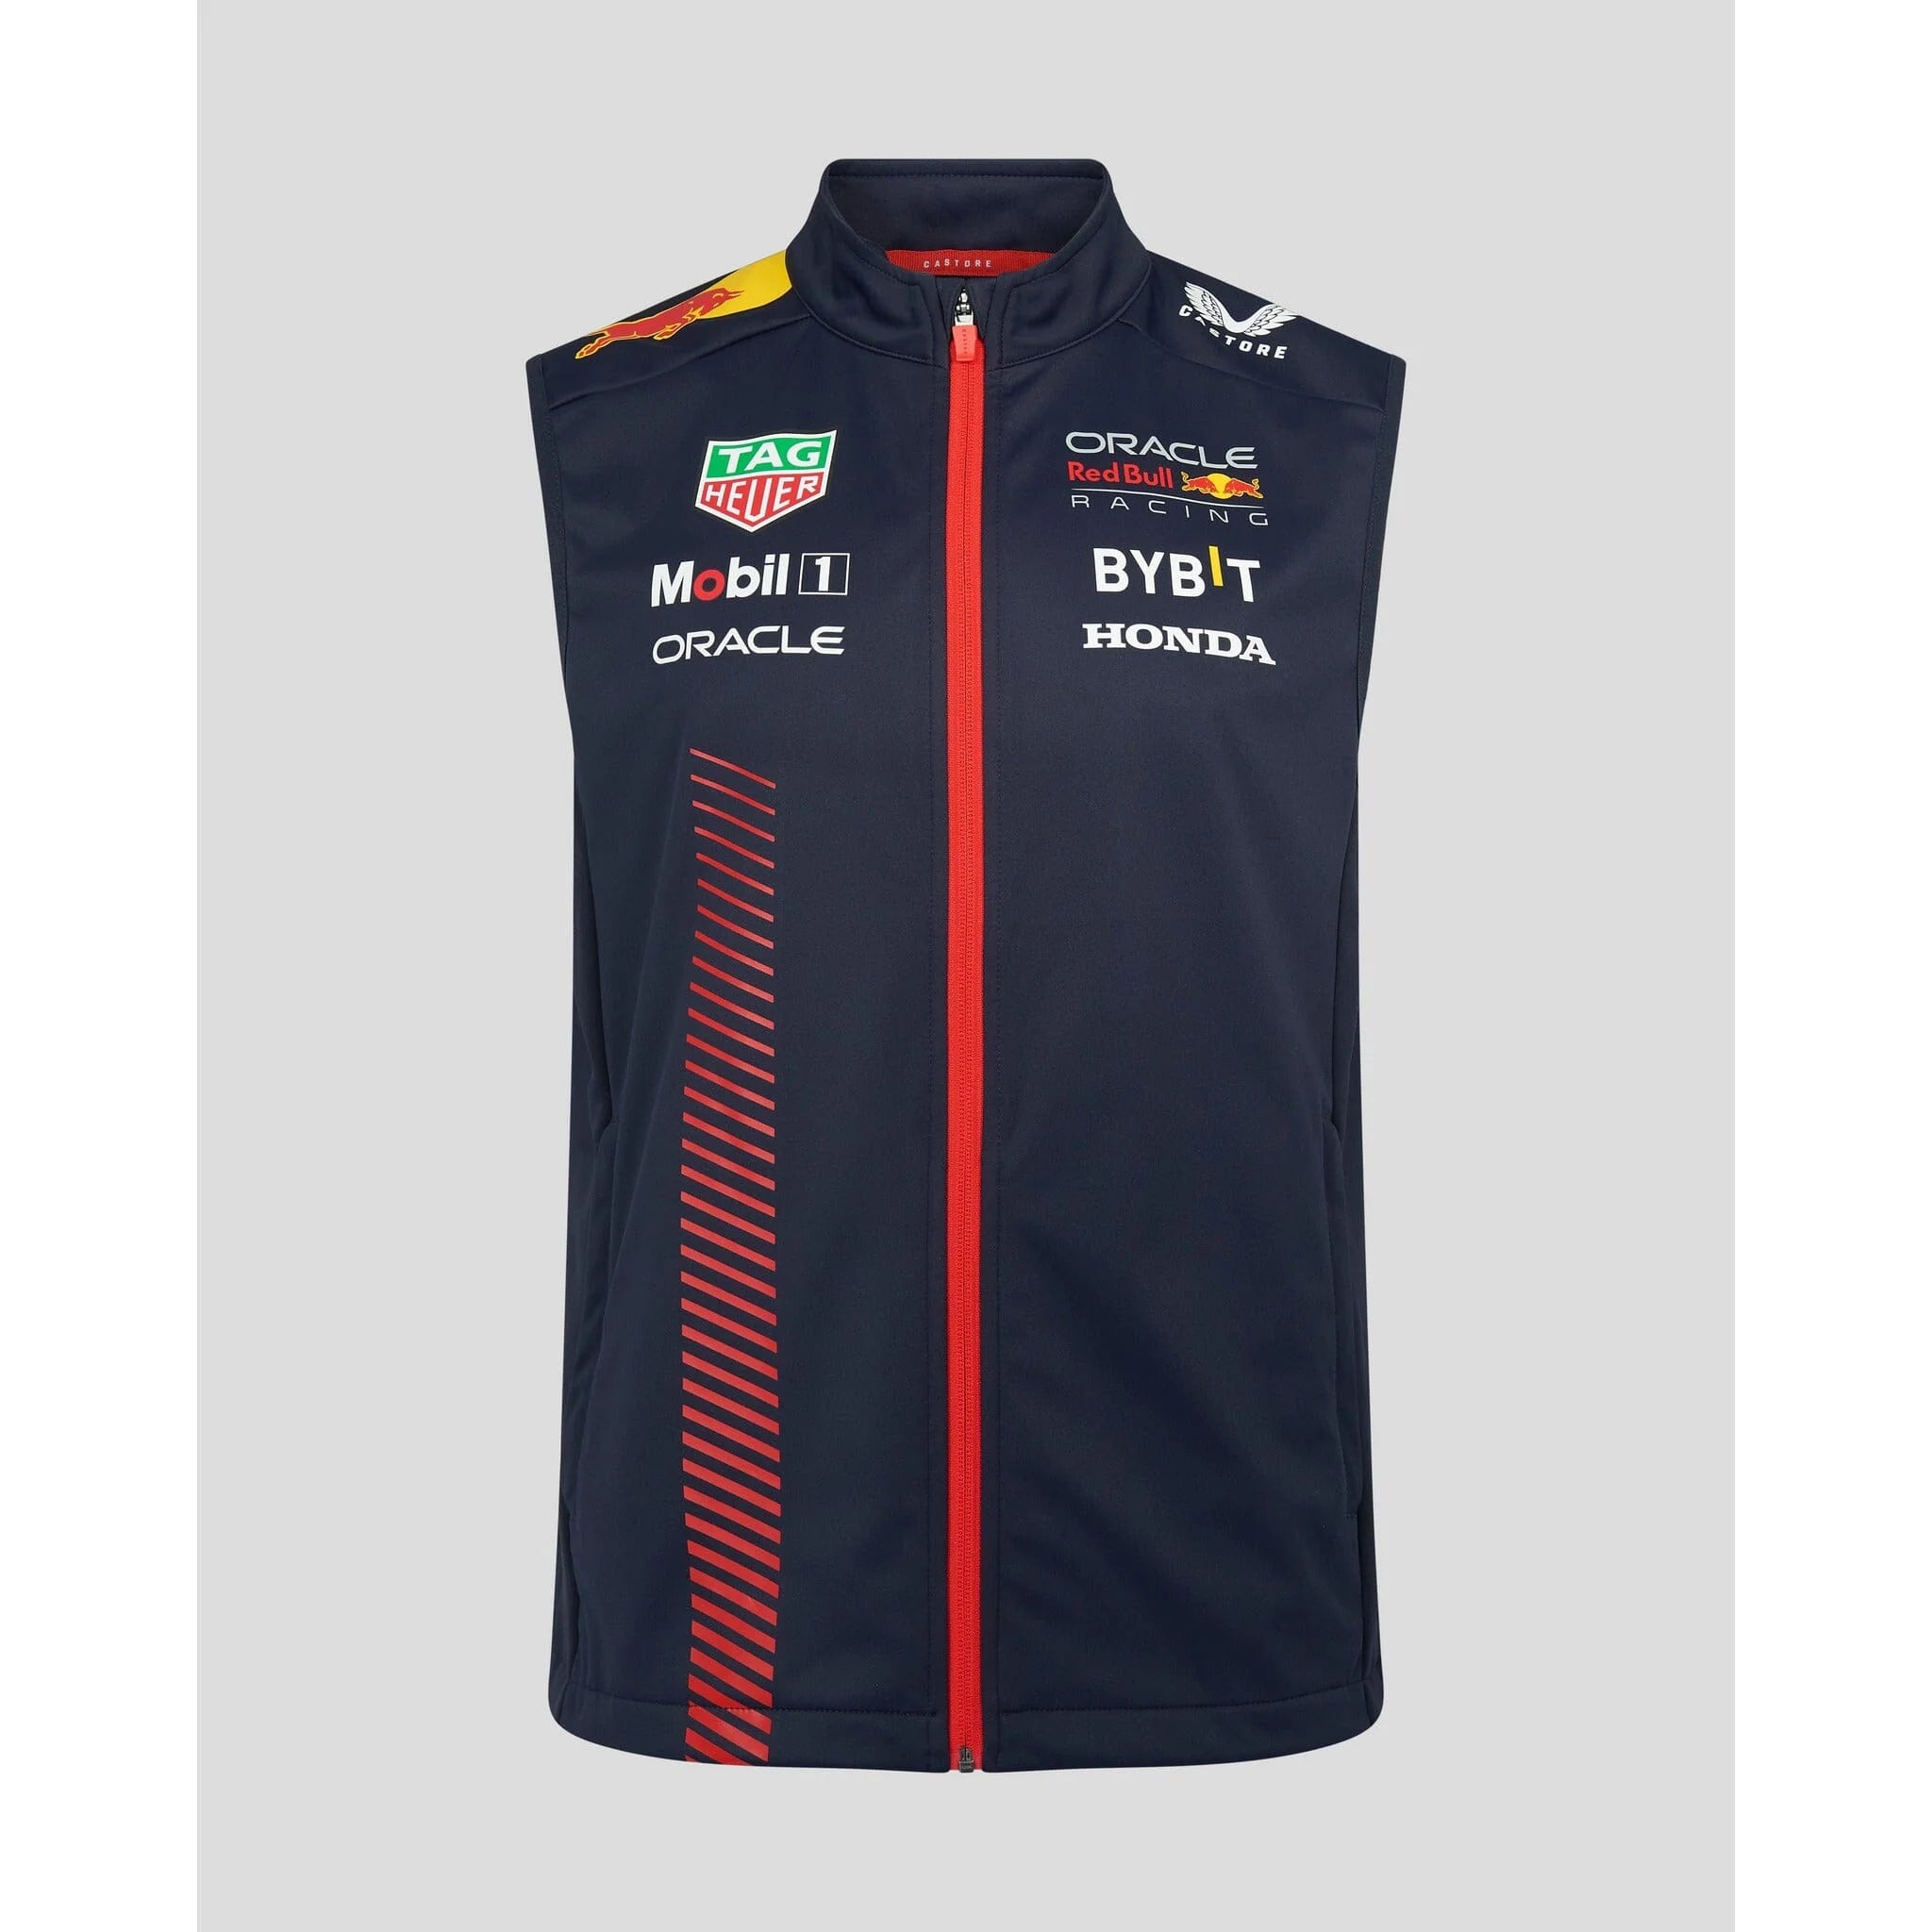 Red Bull Racing Team Softshell Men's Jacket